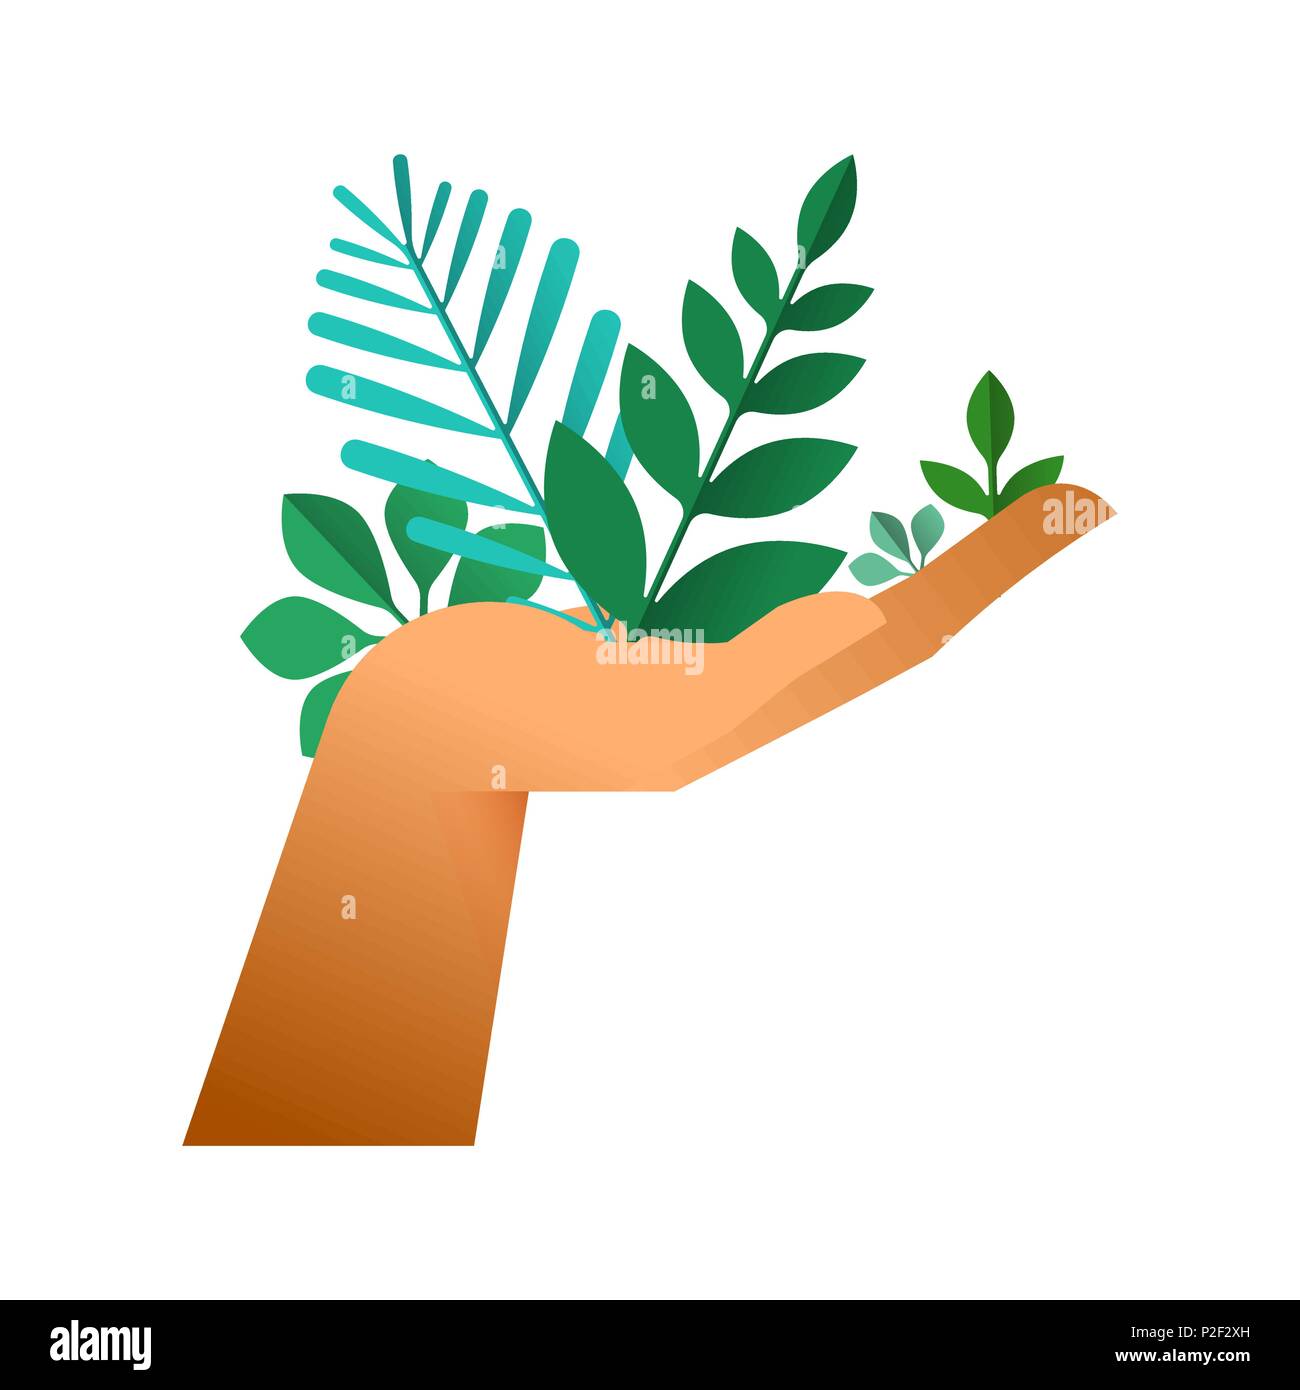 Die menschliche Hand, grüne Blätter, schröpfen Geste auf isolierten Hintergrund. Natur Hilfe Konzept oder Umweltschutz Abbildung. EPS 10 Vektor. Stock Vektor